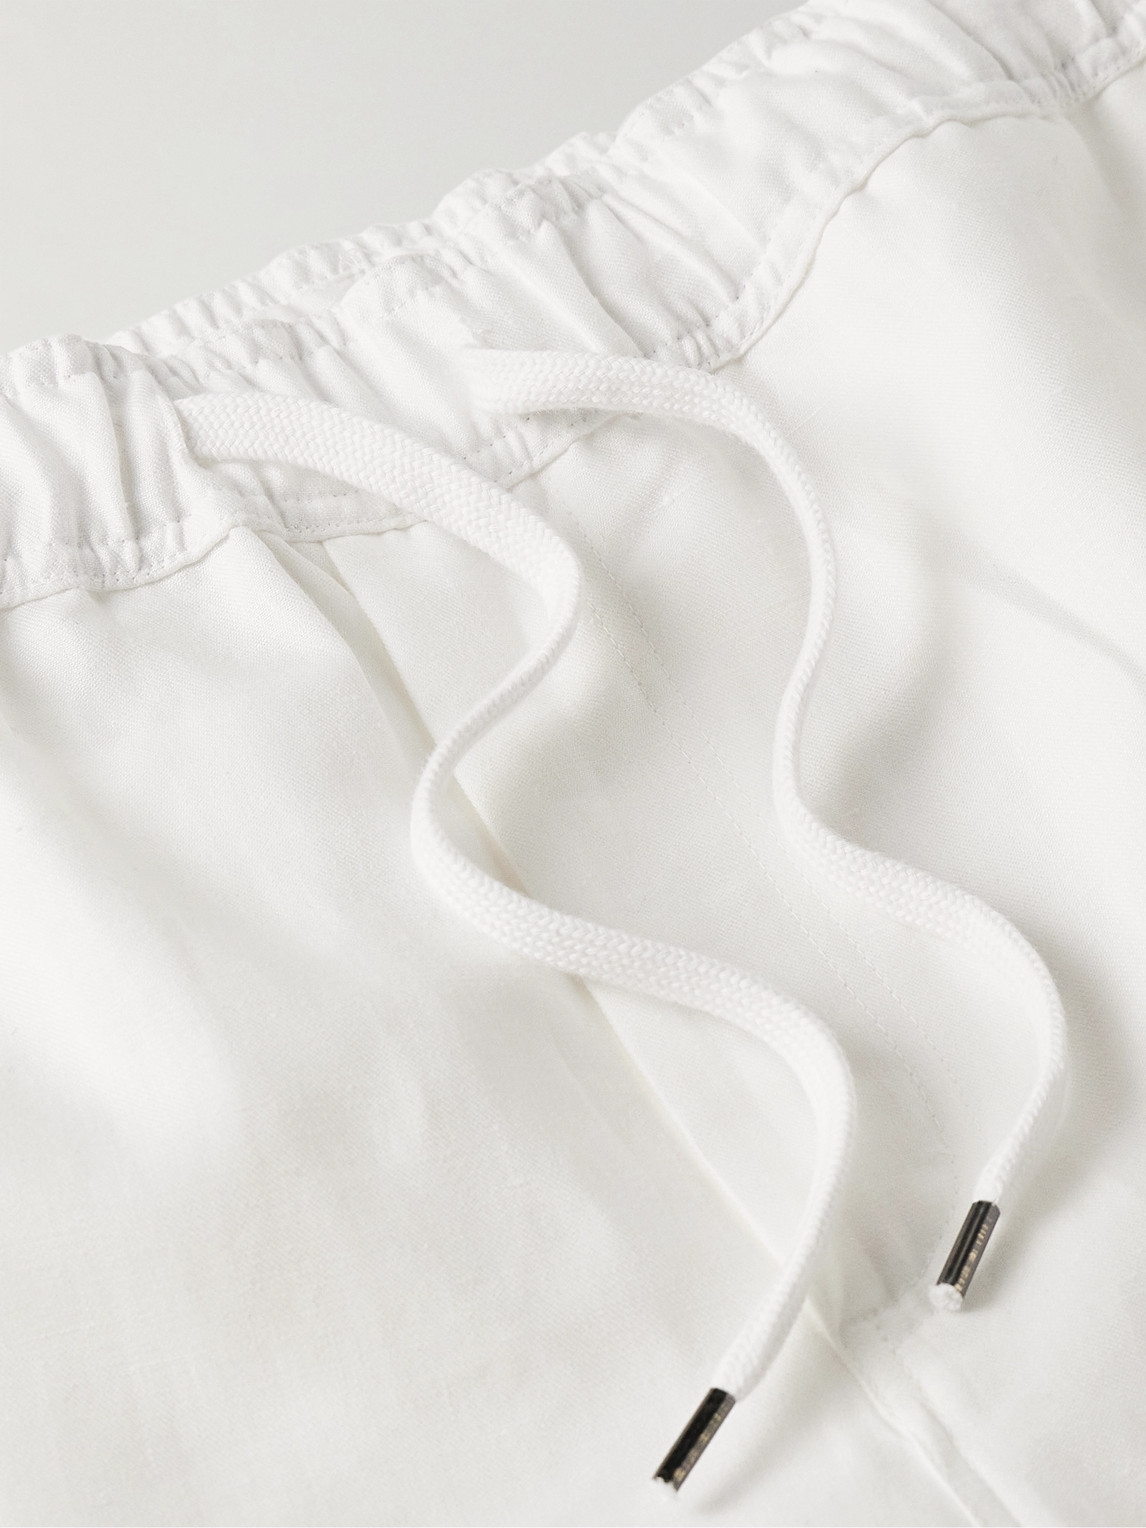 Shop Derek Rose Sydney 1 Straight-leg Linen Drawstring Shorts In White